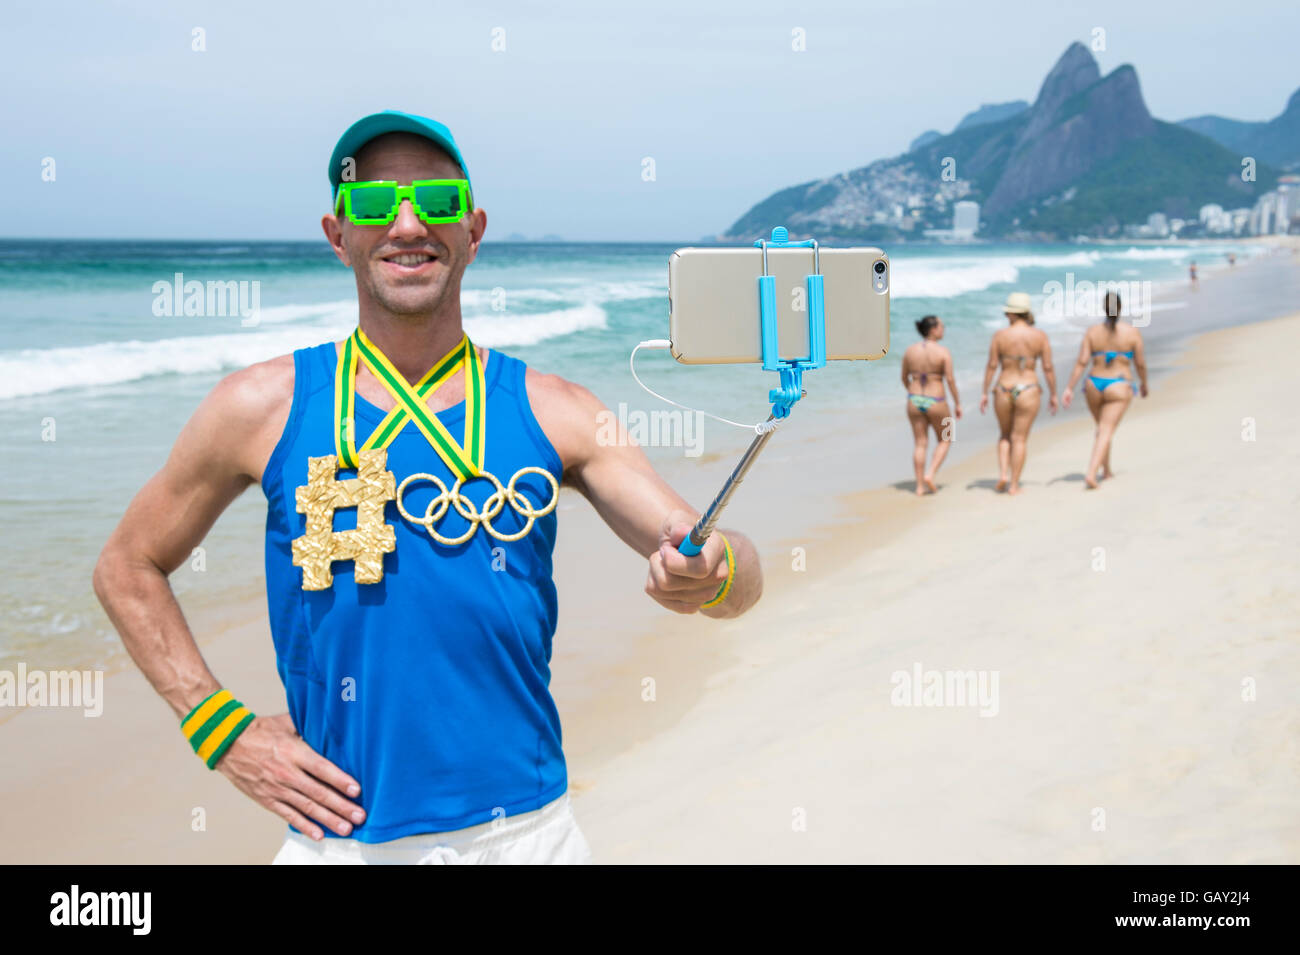 RIO DE JANEIRO - 10. März 2016: Sportler mit Hashtag und Olympischen Ringe gold Medaillen steht unter einem Selfie am Strand von Ipanema. Stockfoto